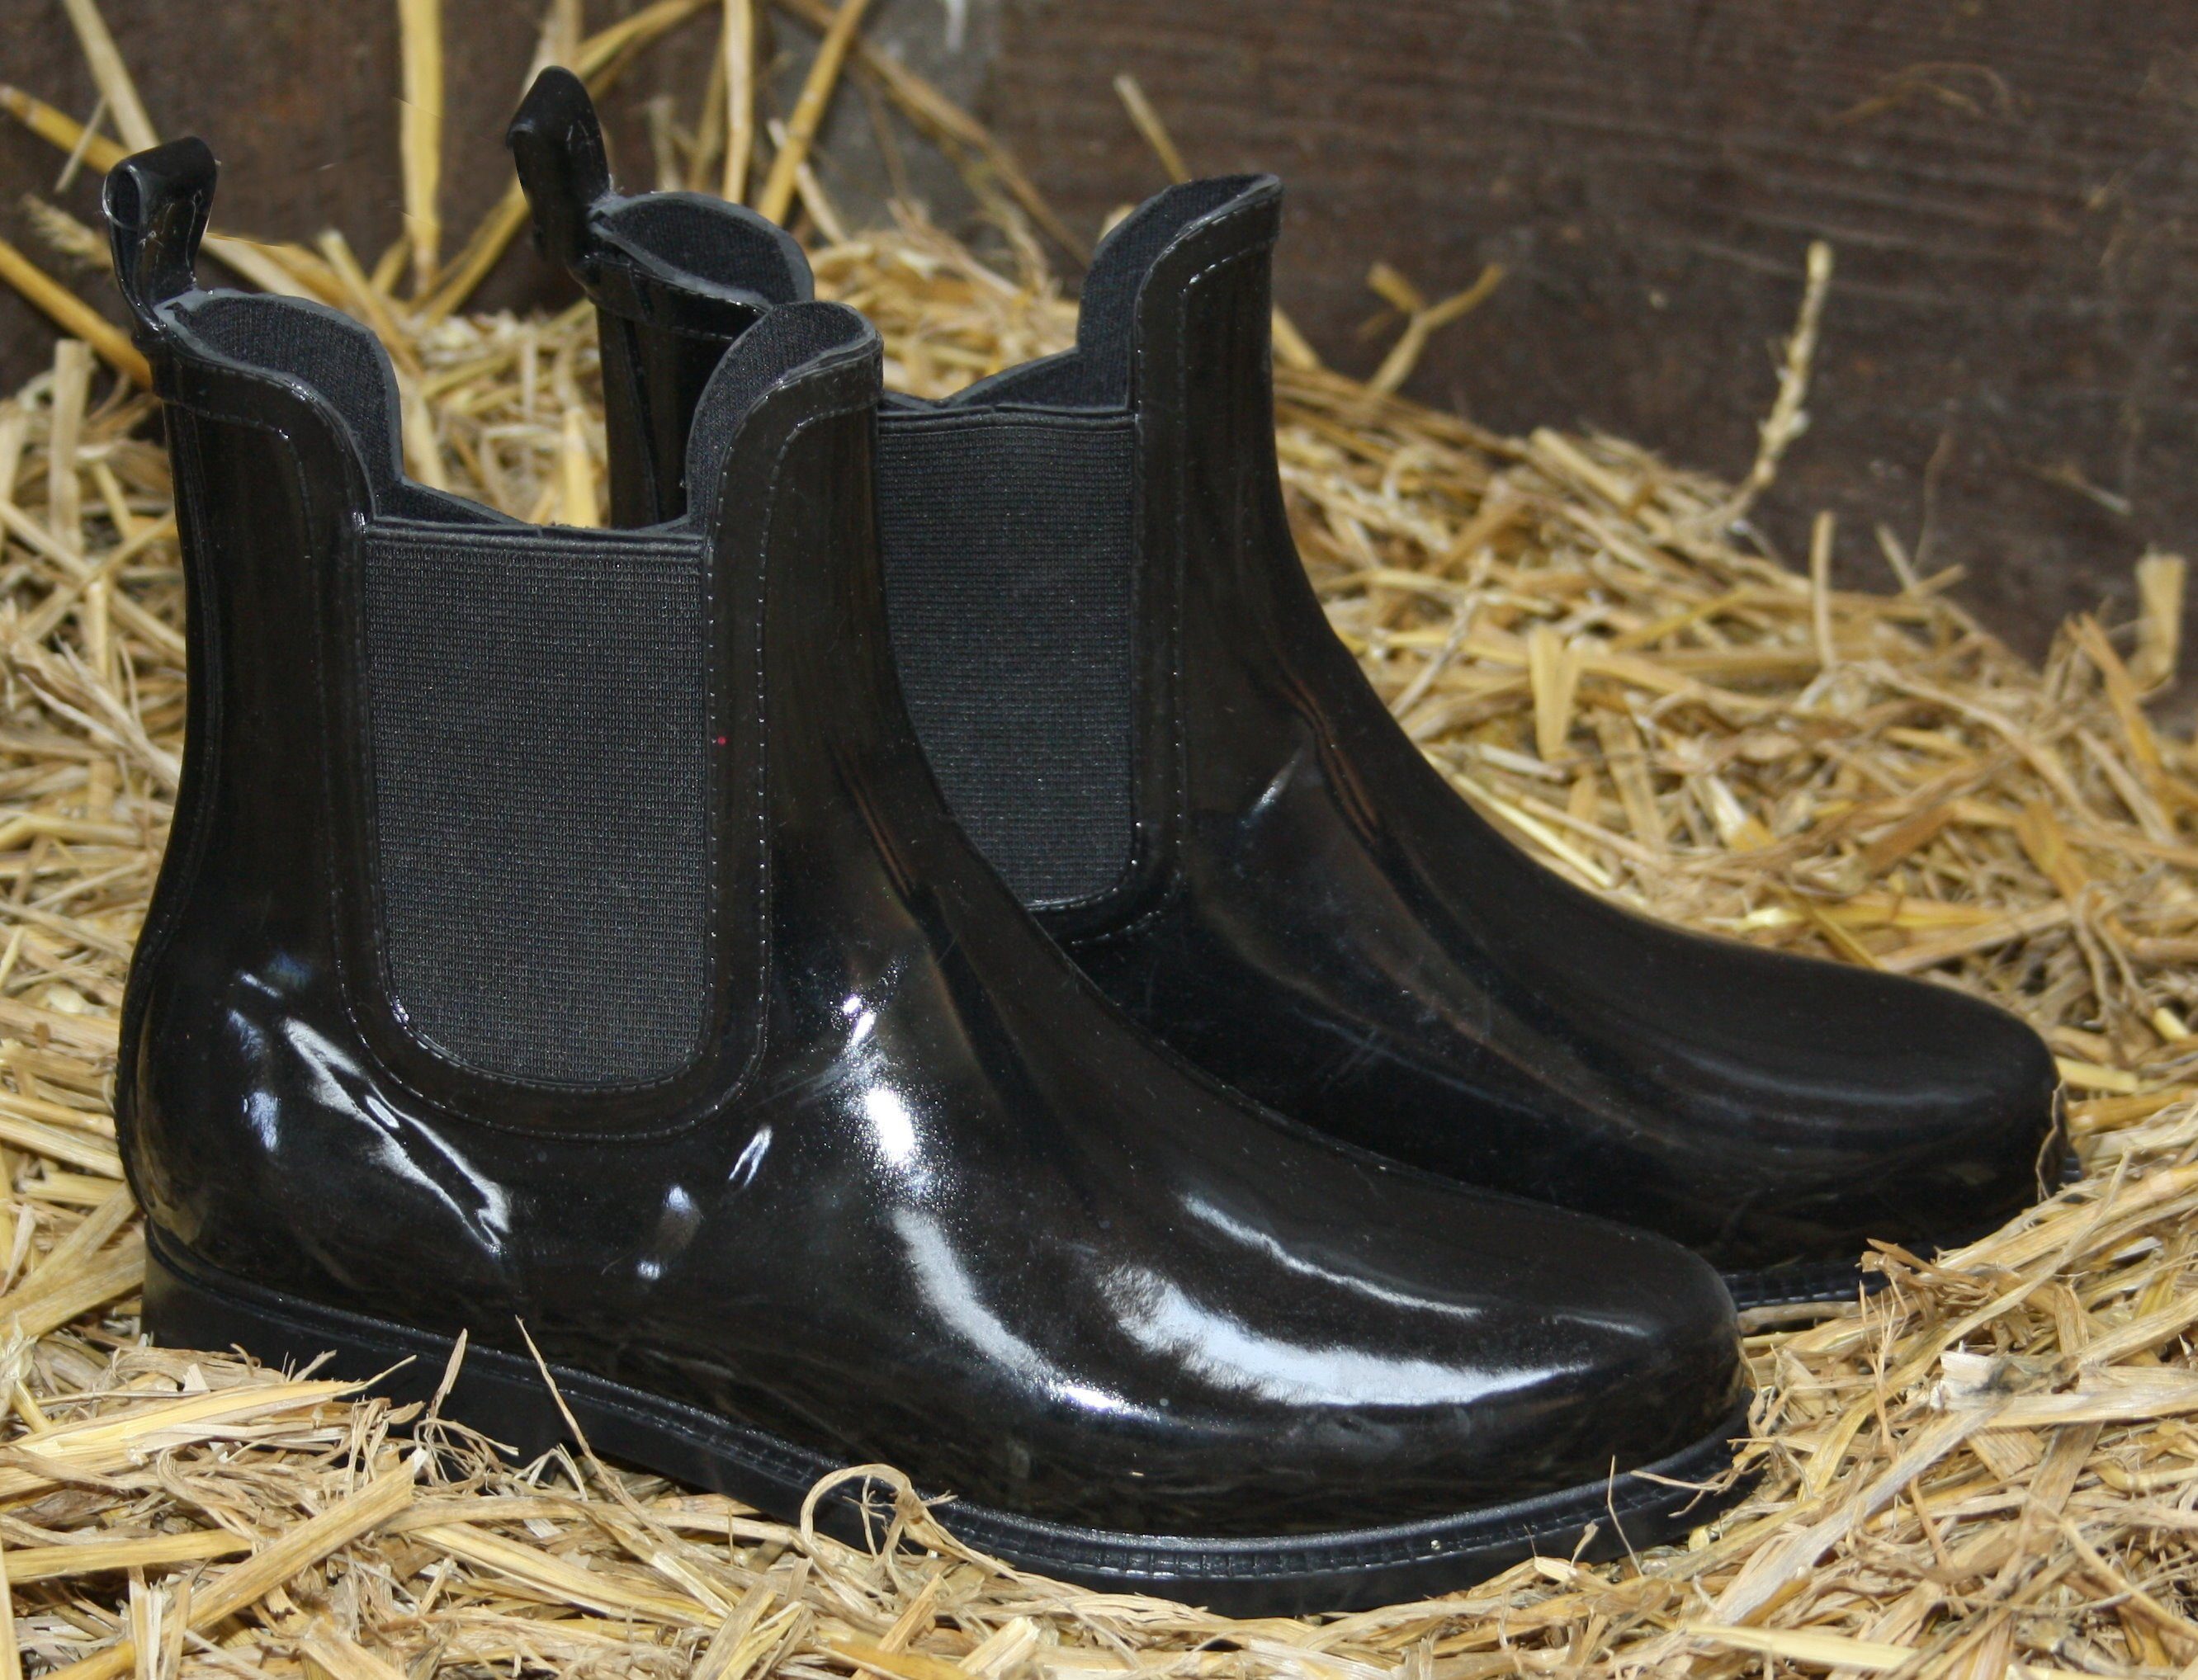 Zapato Chelseaboots Damen Lack Stiefeletten Gummistiefel Chelsea Jelly Boots  Schuhe Regenstiefel online kaufen | OTTO